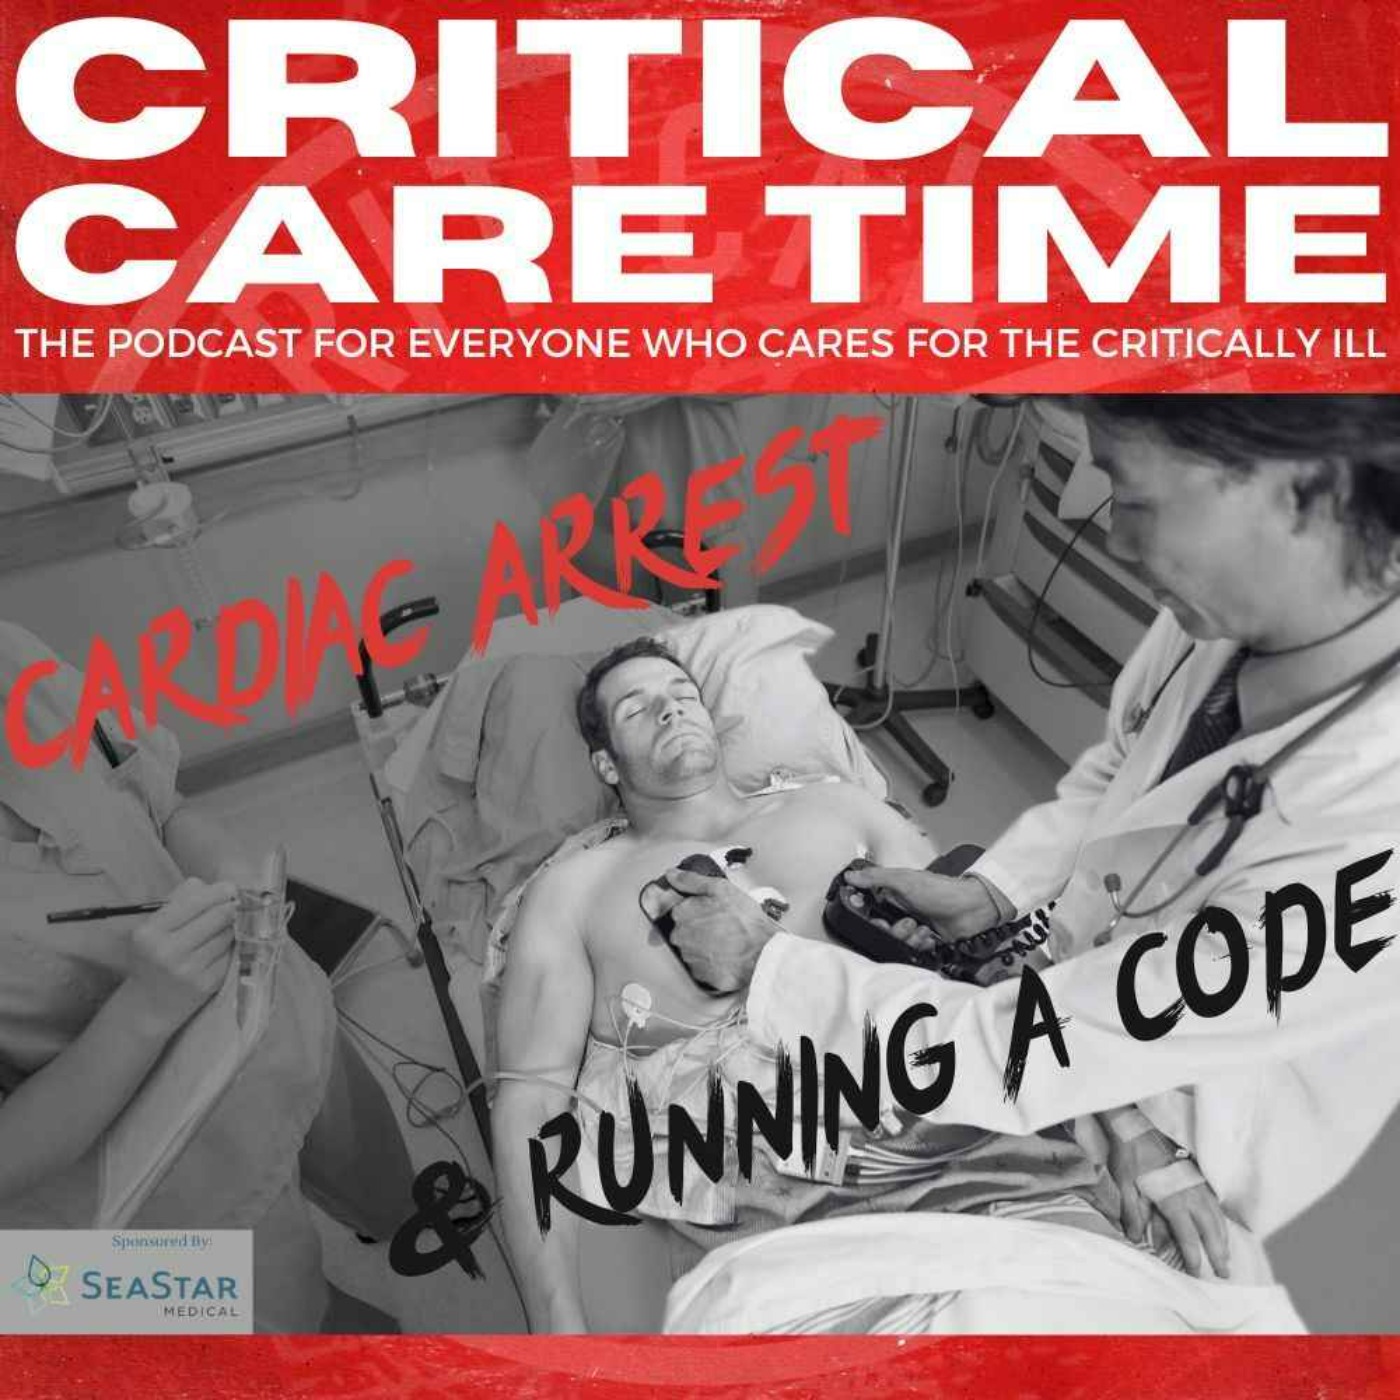 cover art for 9. Cardiac Arrest & Running a Code